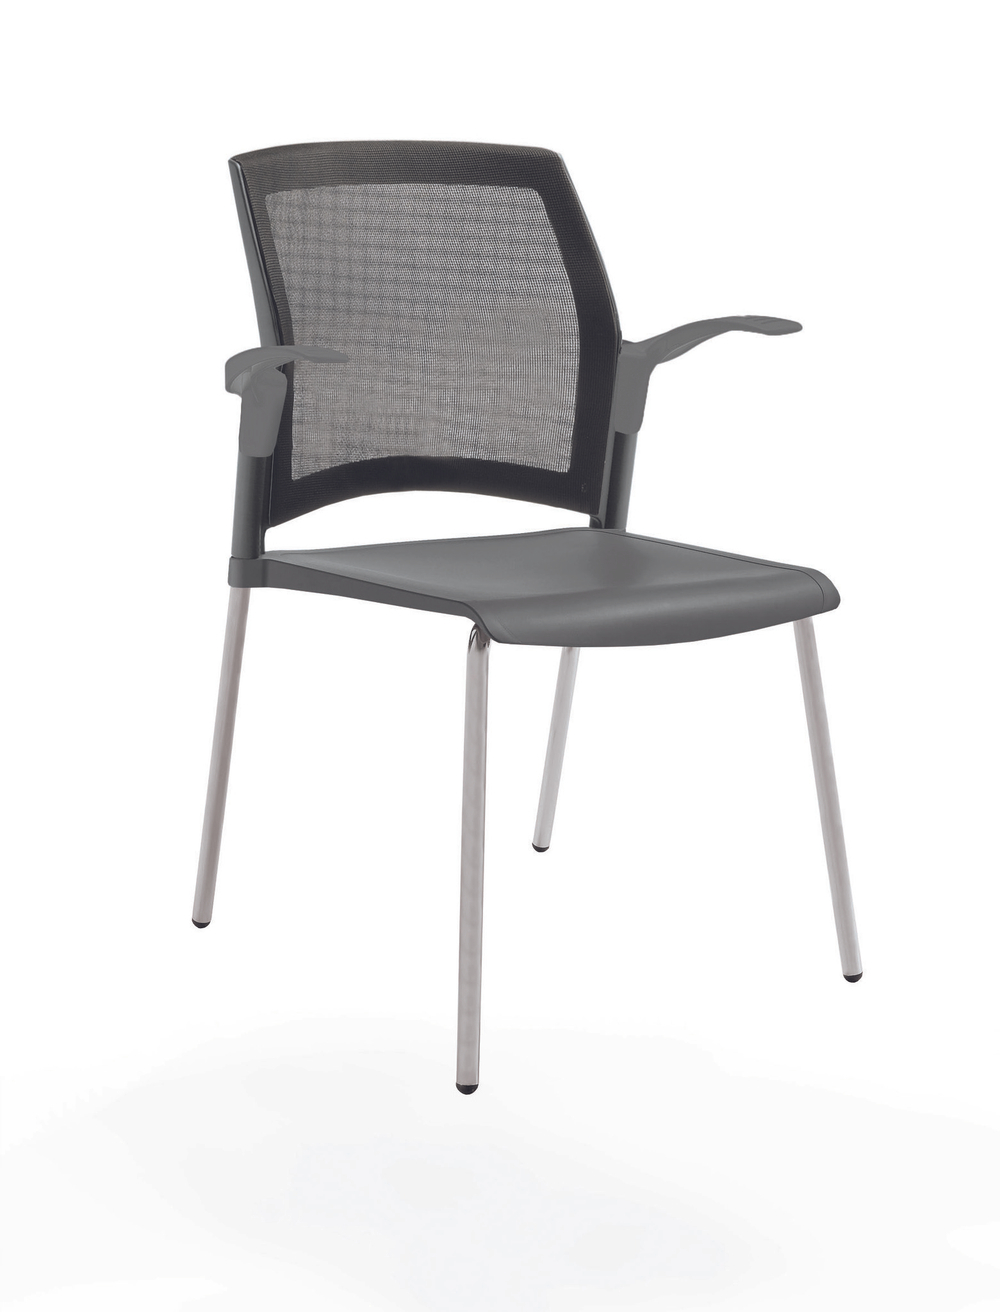 стул Rewind на 4 ногах, каркас серыйй, пластик серый, спинка-сетка, с открытыми подлокотниками